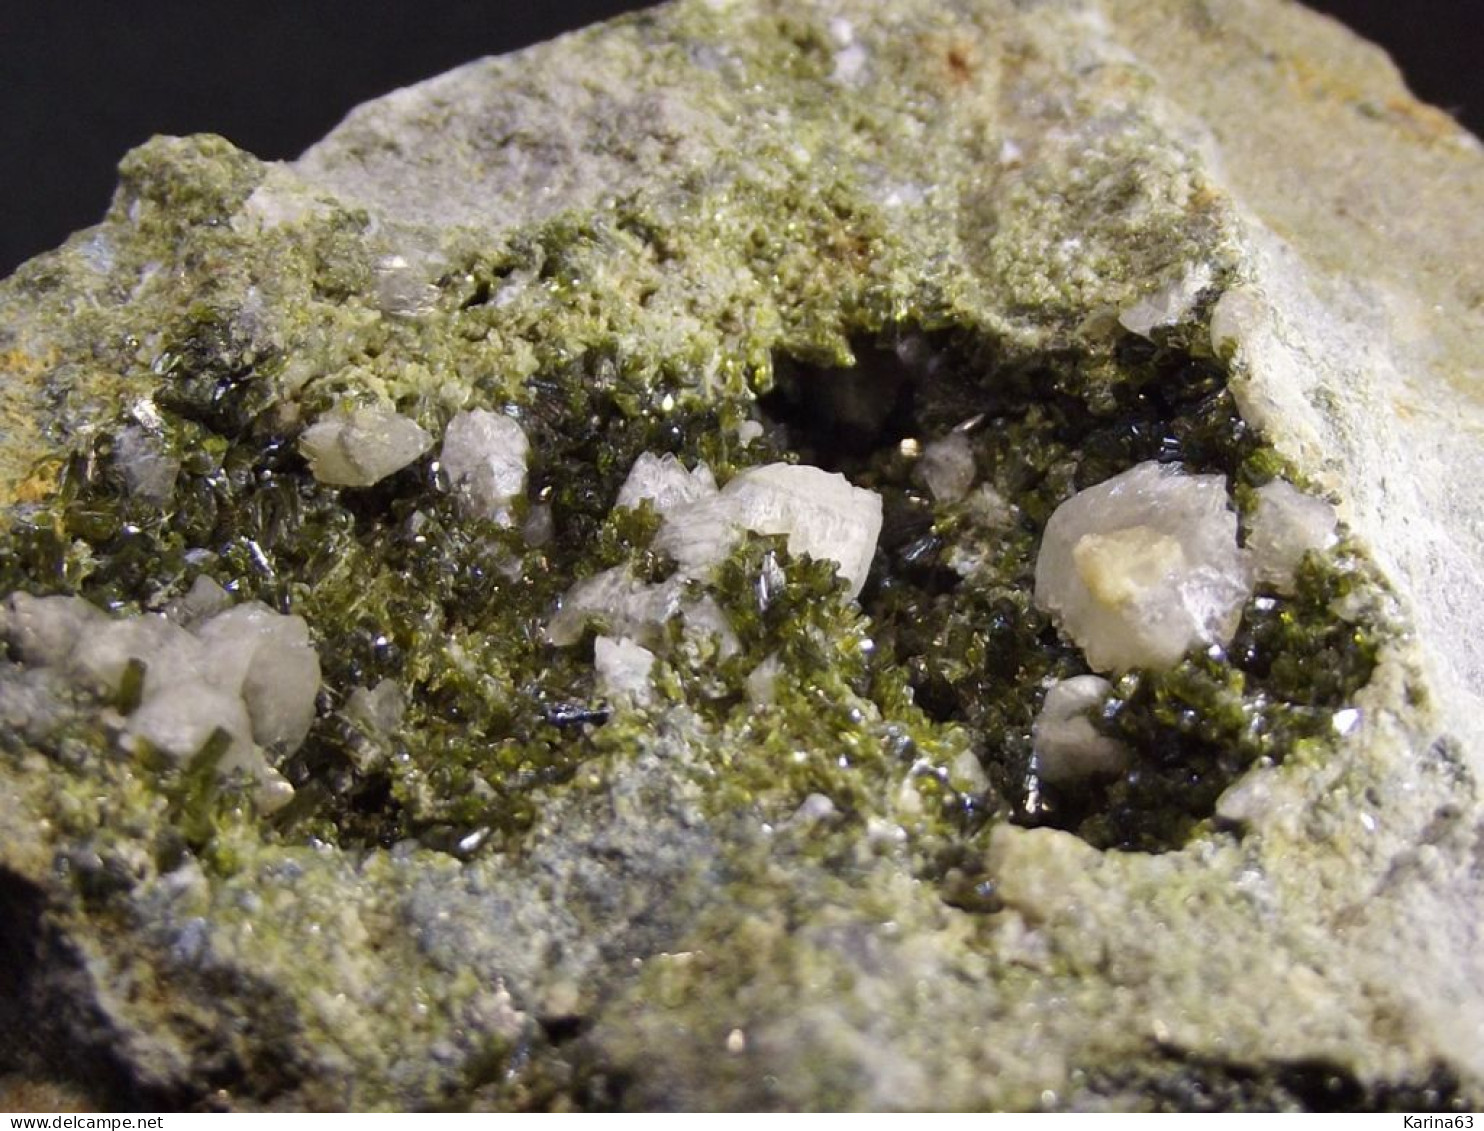 Epidote With Gypsum And Calcite ( 6 X 4 X 2 Cm.) - Senhora Da Luz  Quarry - Obidos - Leiria District - Portugal - Minerals